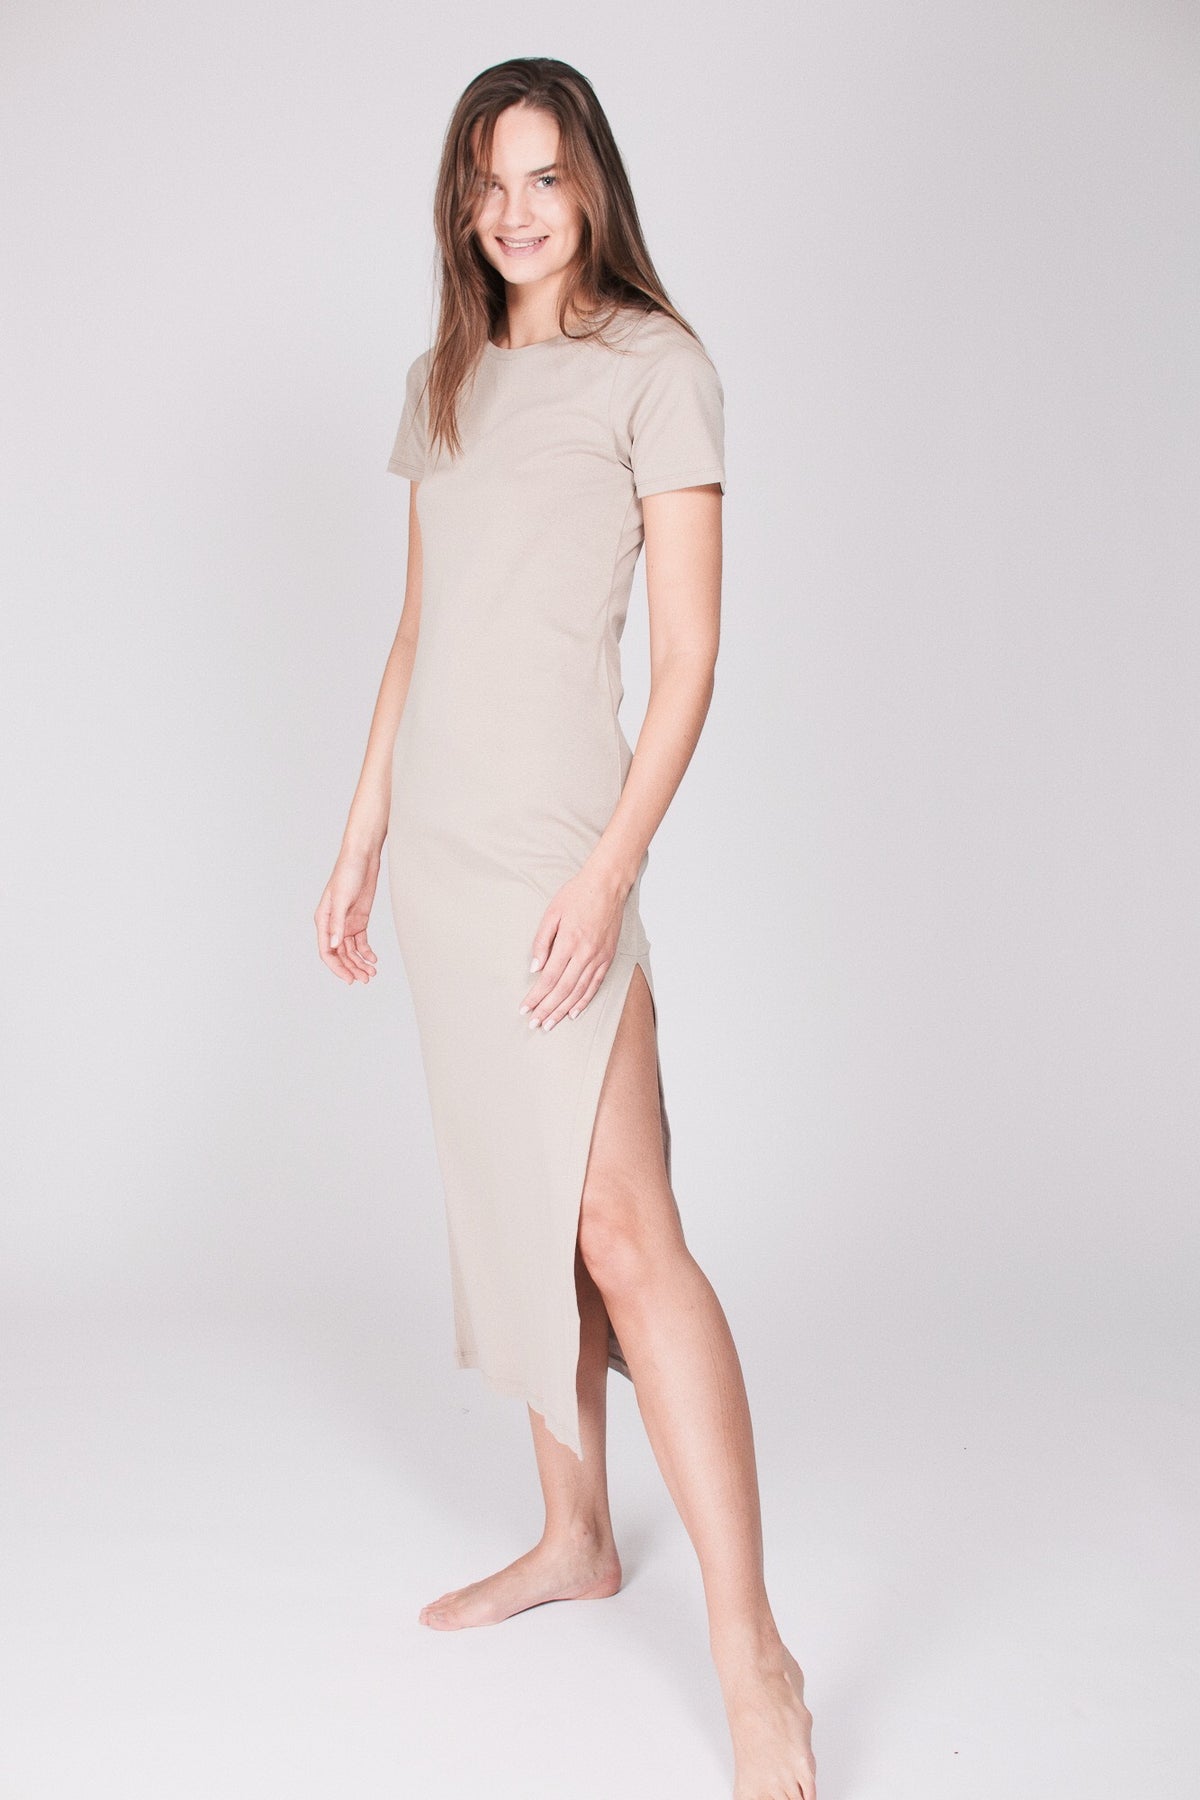 The T-dress : Organic Cotton - Beige - AWAN - Loungewear - VILLOID.no